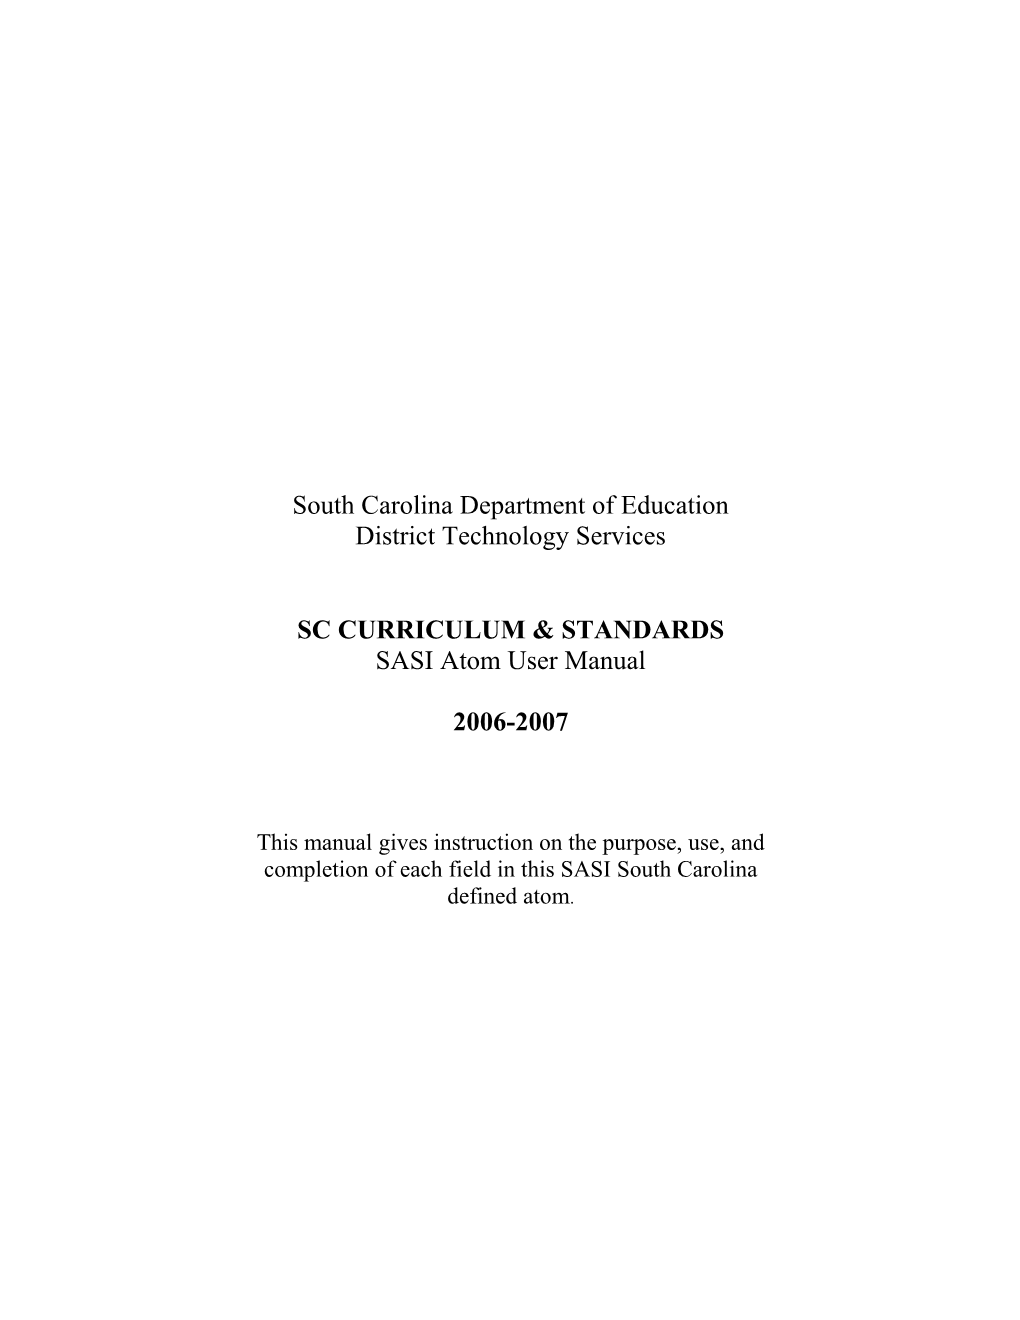 SC Curriculum Standards 2004 Atom